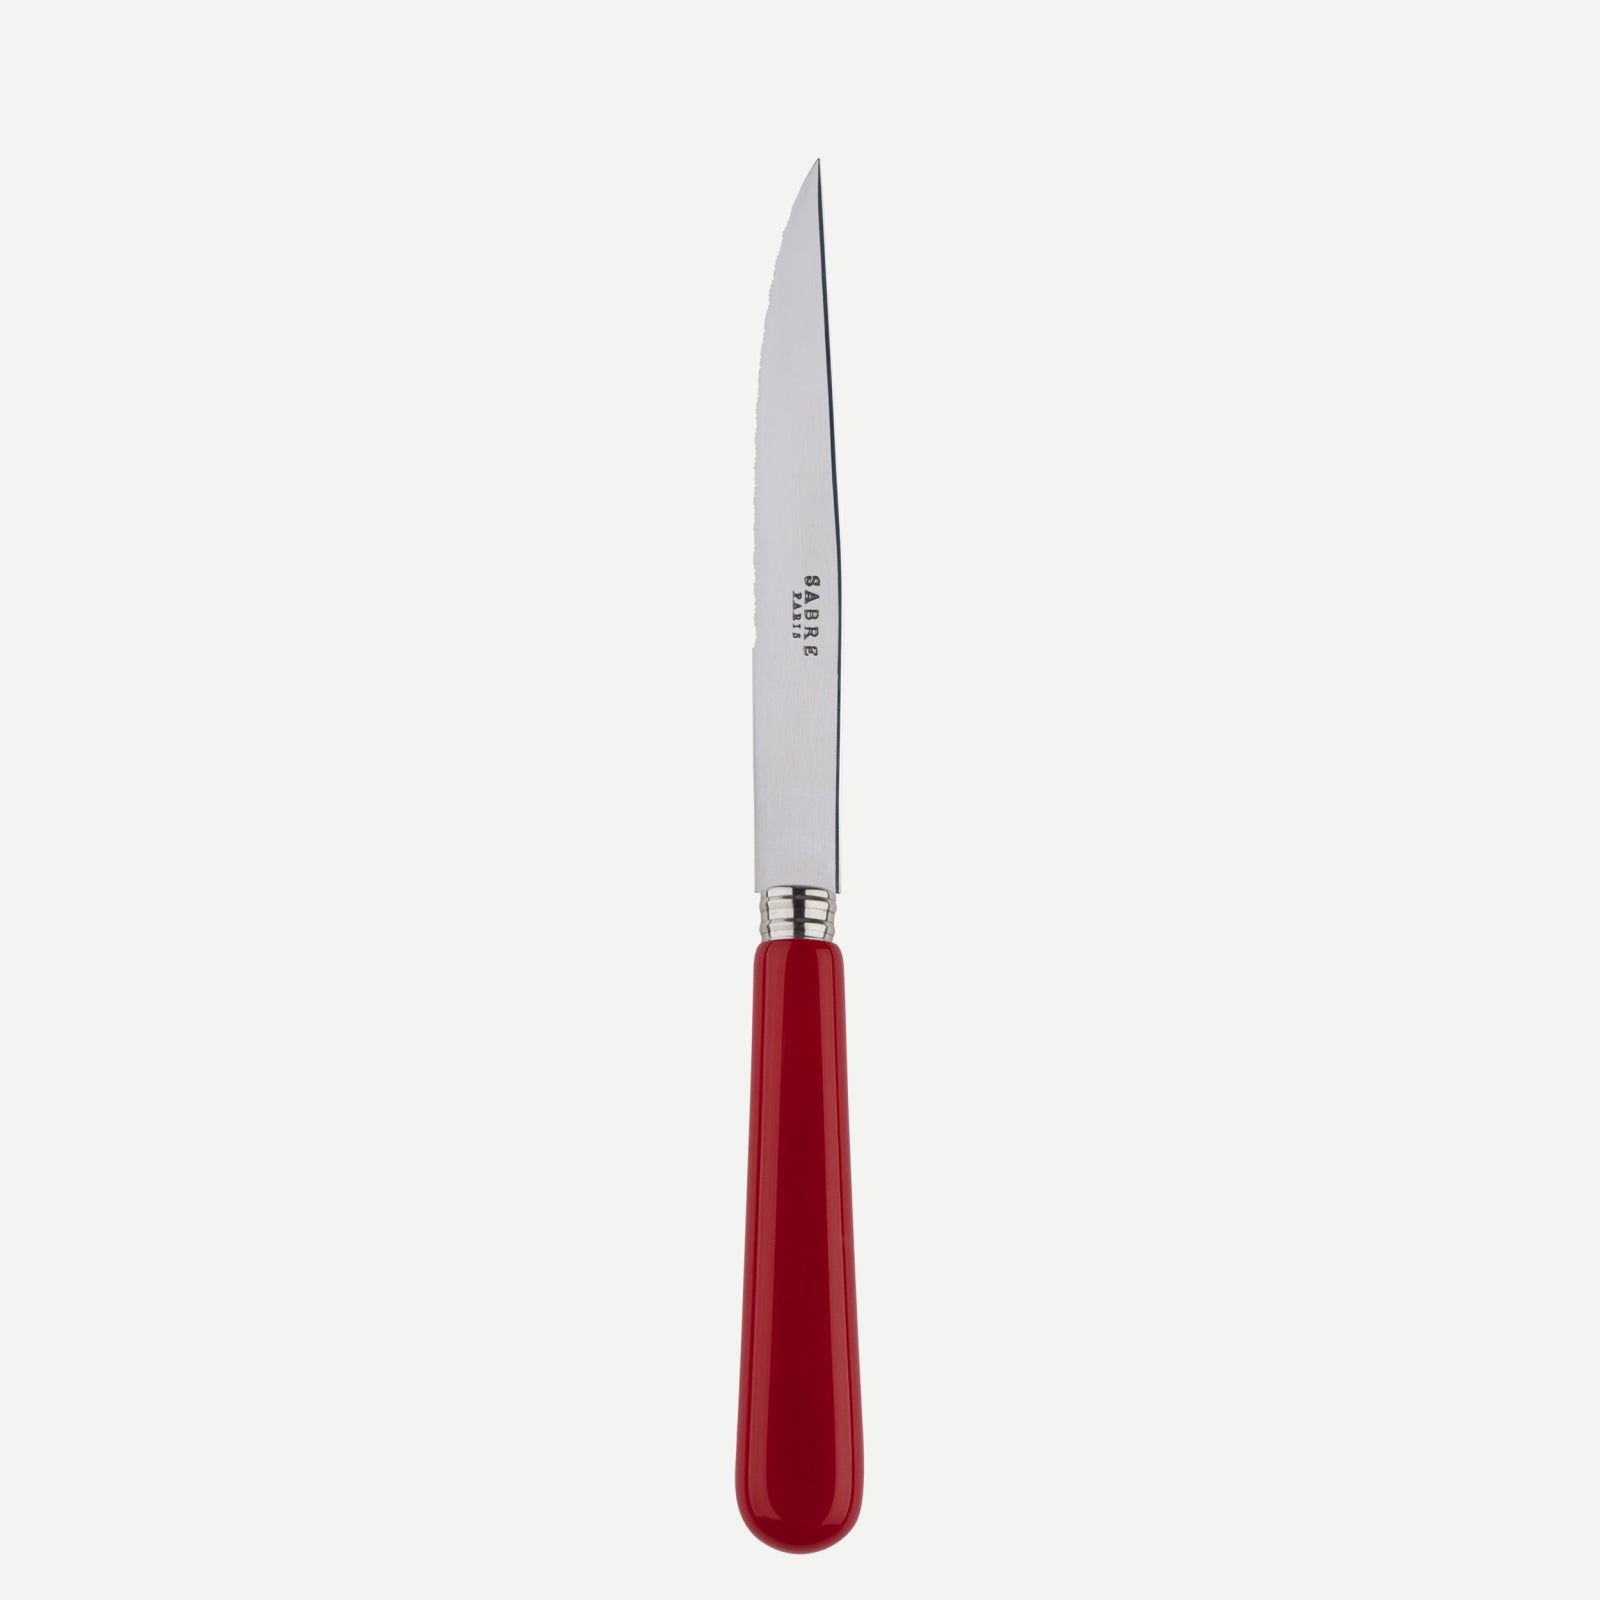 Steack knife - Pop unis - Burgundy